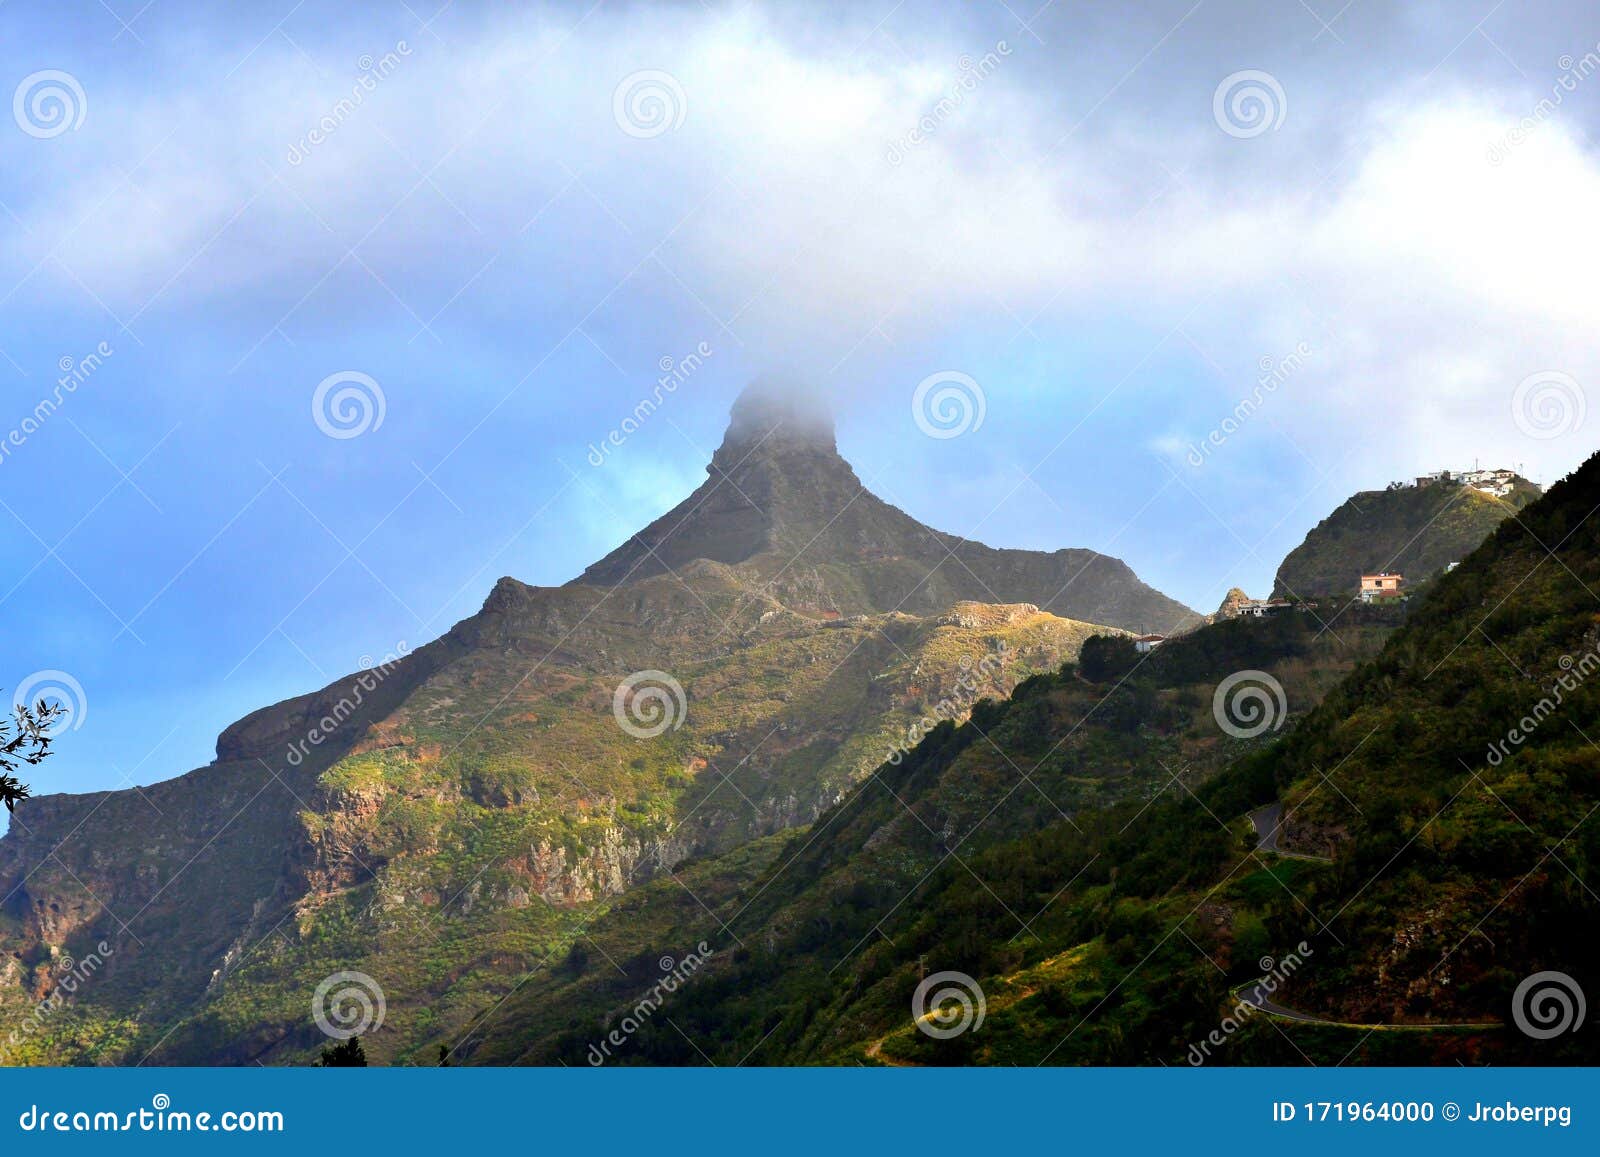 roque de taborno in the anaga mountain range